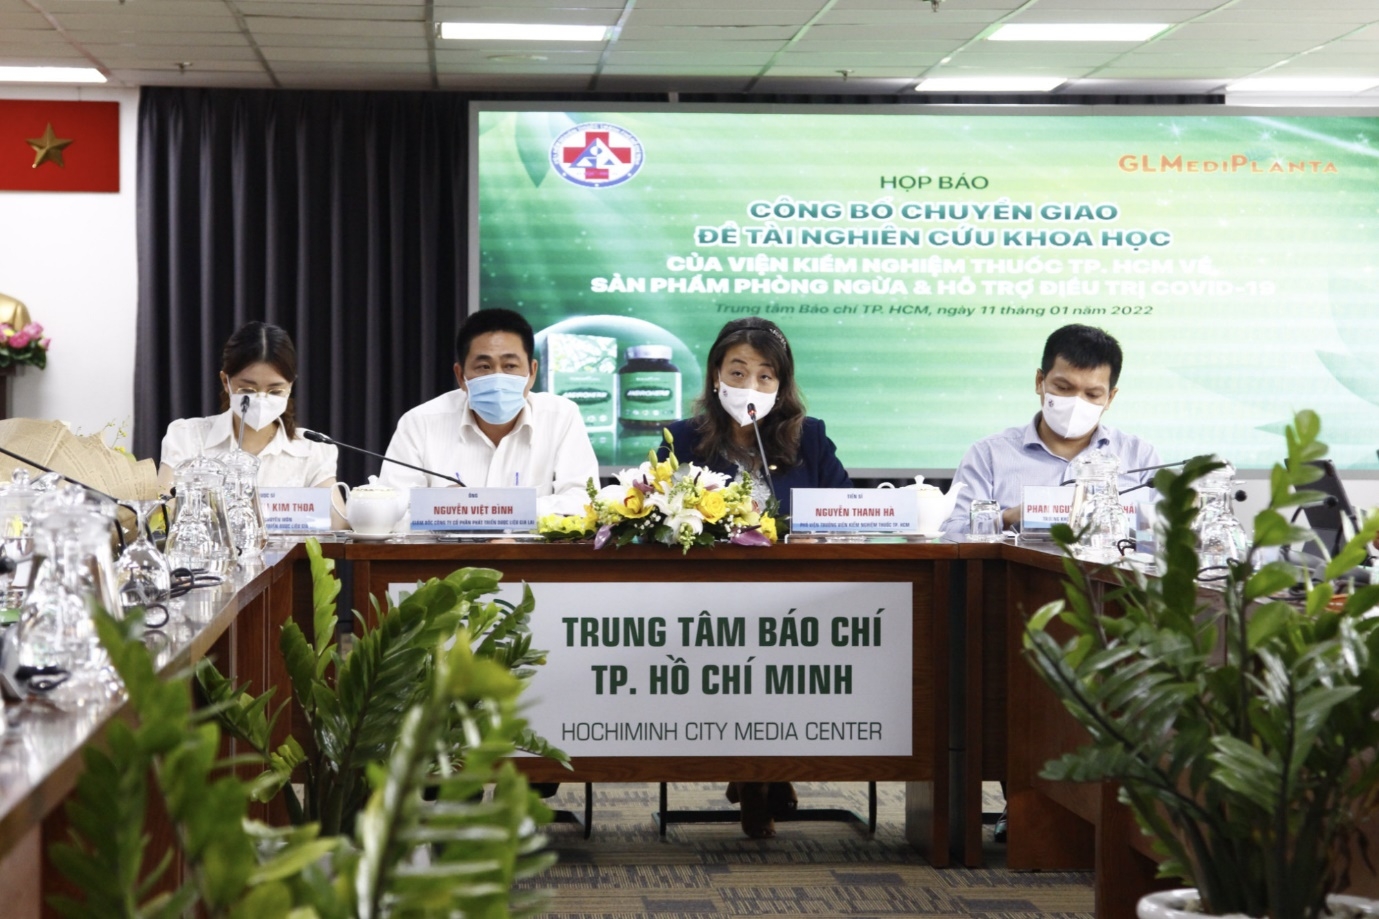 Viện Kiểm nghiệm thuốc Thành phố Hồ Chí Minh công bố chuyển giao đề tài nghiên cứu khoa học sản phẩm phòng ngừa và hỗ trợ điều trị Covid-19